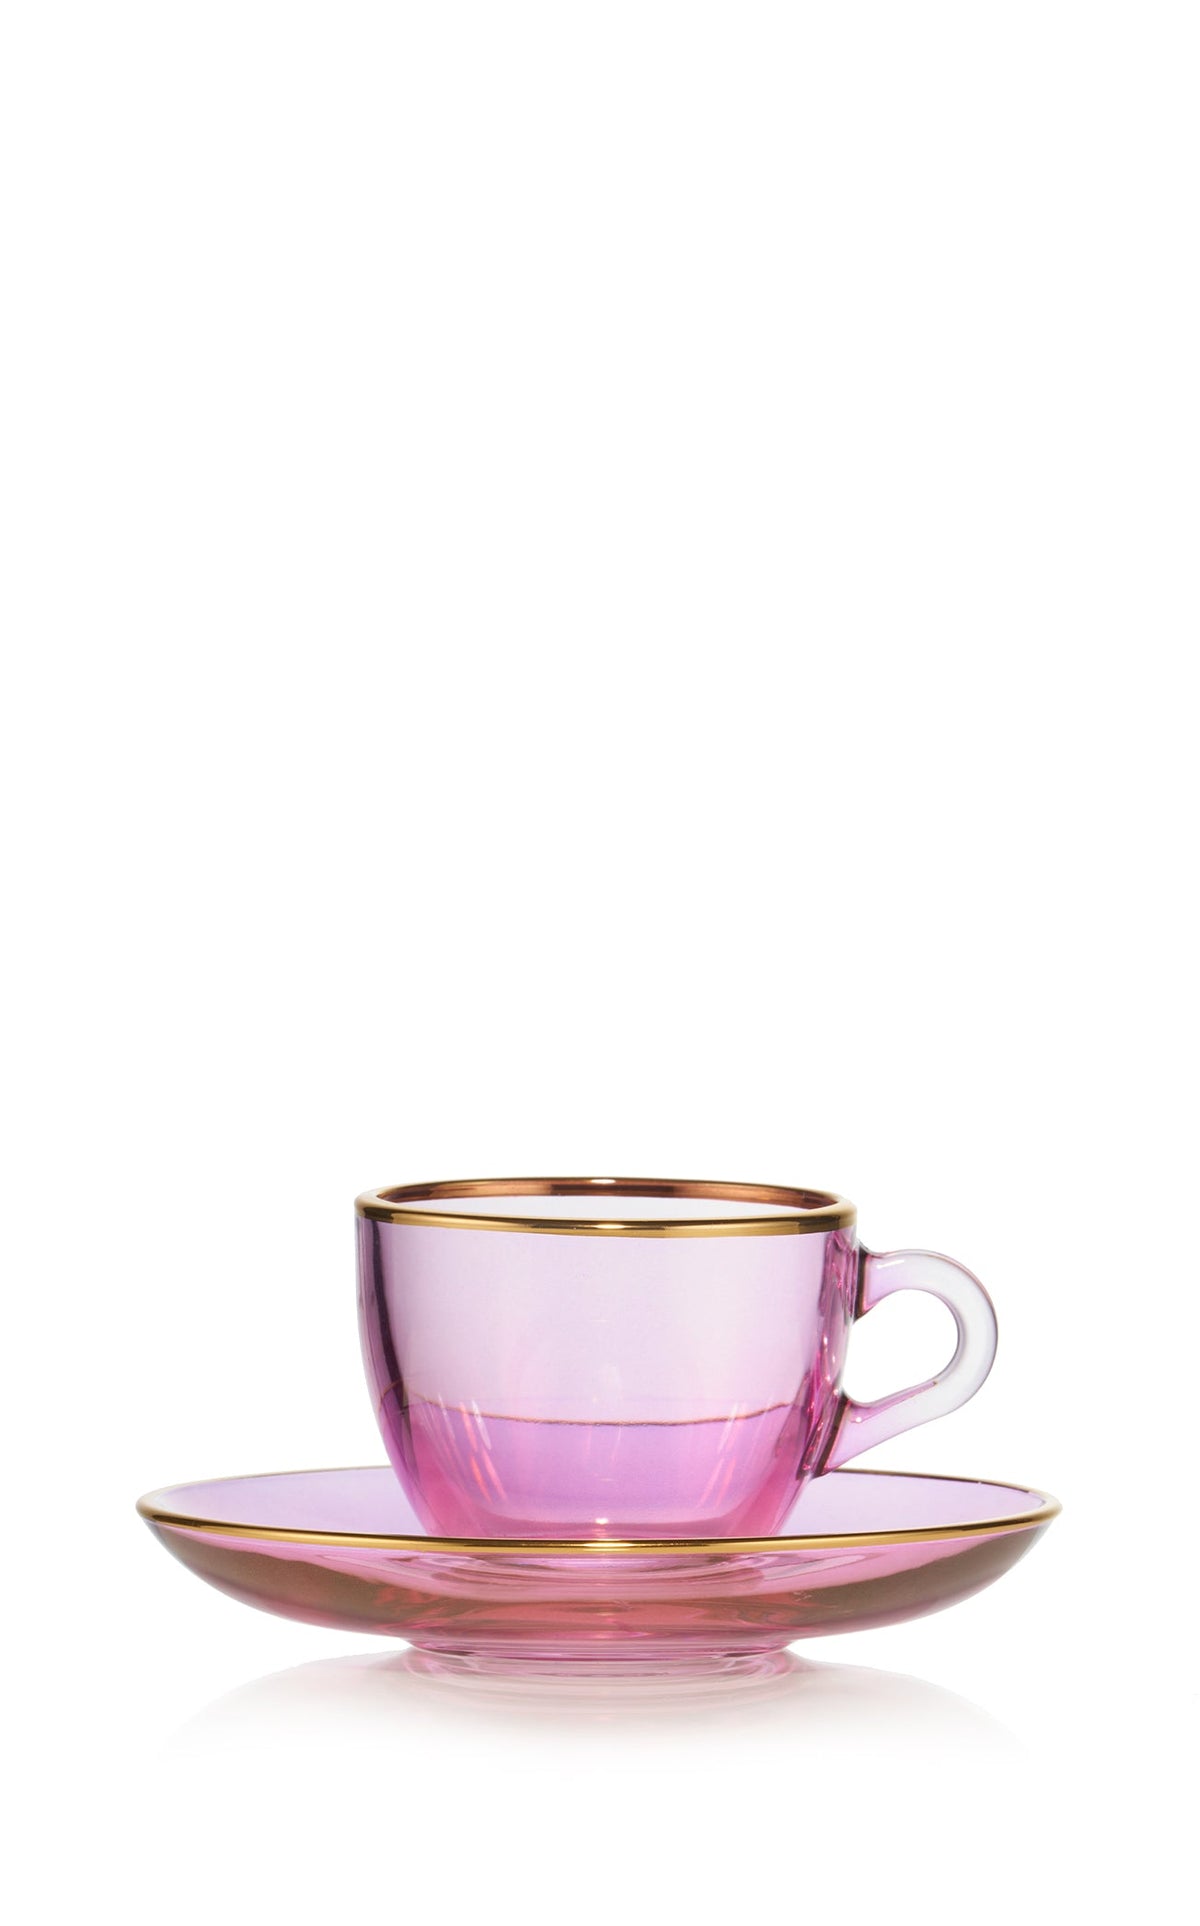 Espressolab - We love Pink! 💕#Espressolab #Iced offee #coffee